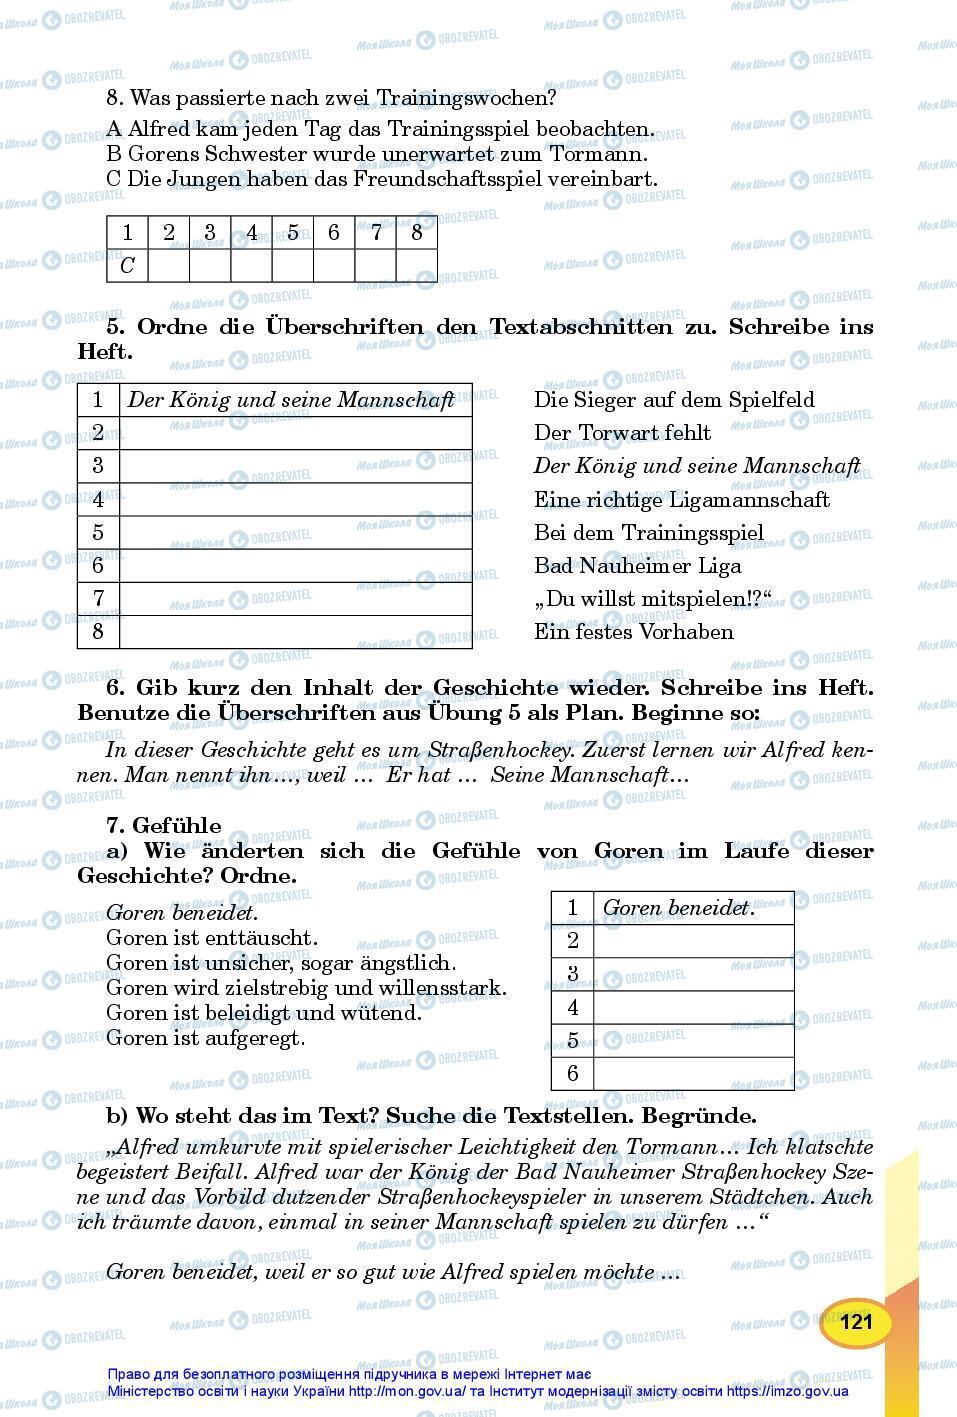 Підручники Німецька мова 7 клас сторінка 121